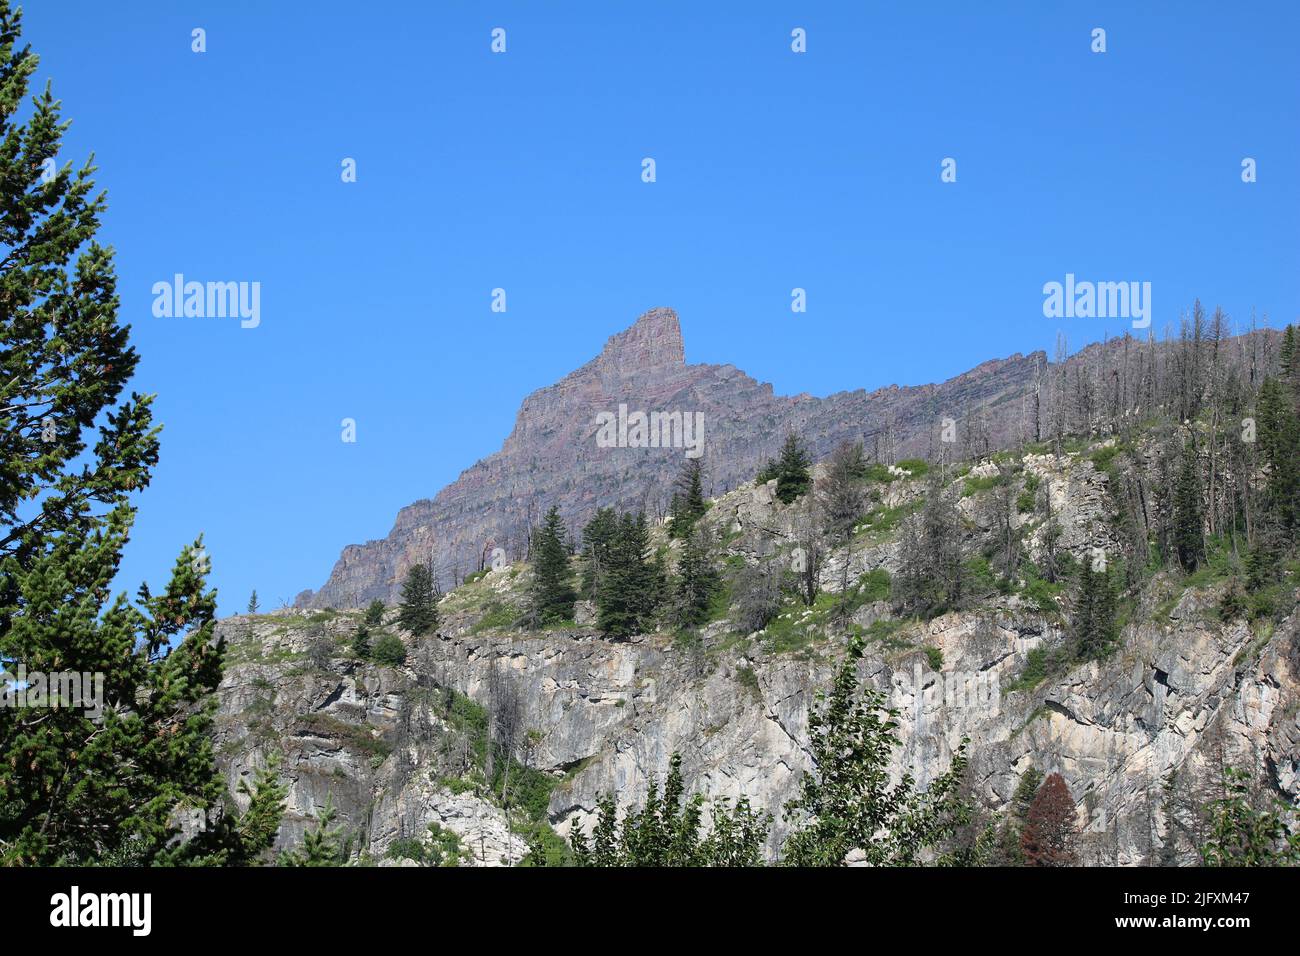 Glacier intagliato colorata cintura serie sedimentary argillite & calcare di Lewis Overtrust Orogeny, Goat Mountain, Glacier National Park, MT, USA Foto Stock